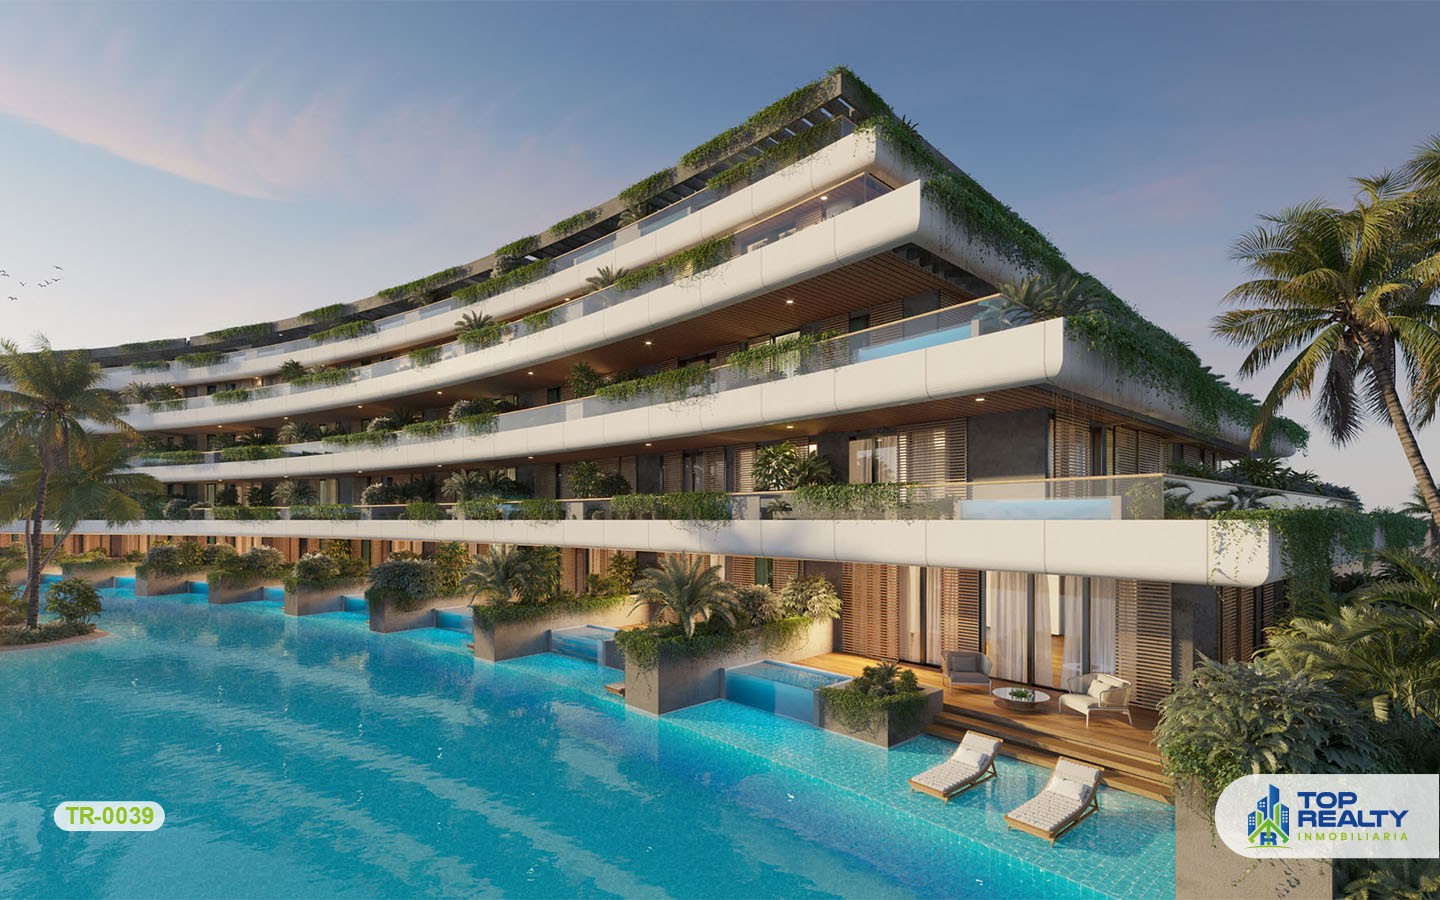 apartamentos - TR-0039: Inversión ideal en Punta Cana: vive el ambiente cosmopolita del Caribe. 2